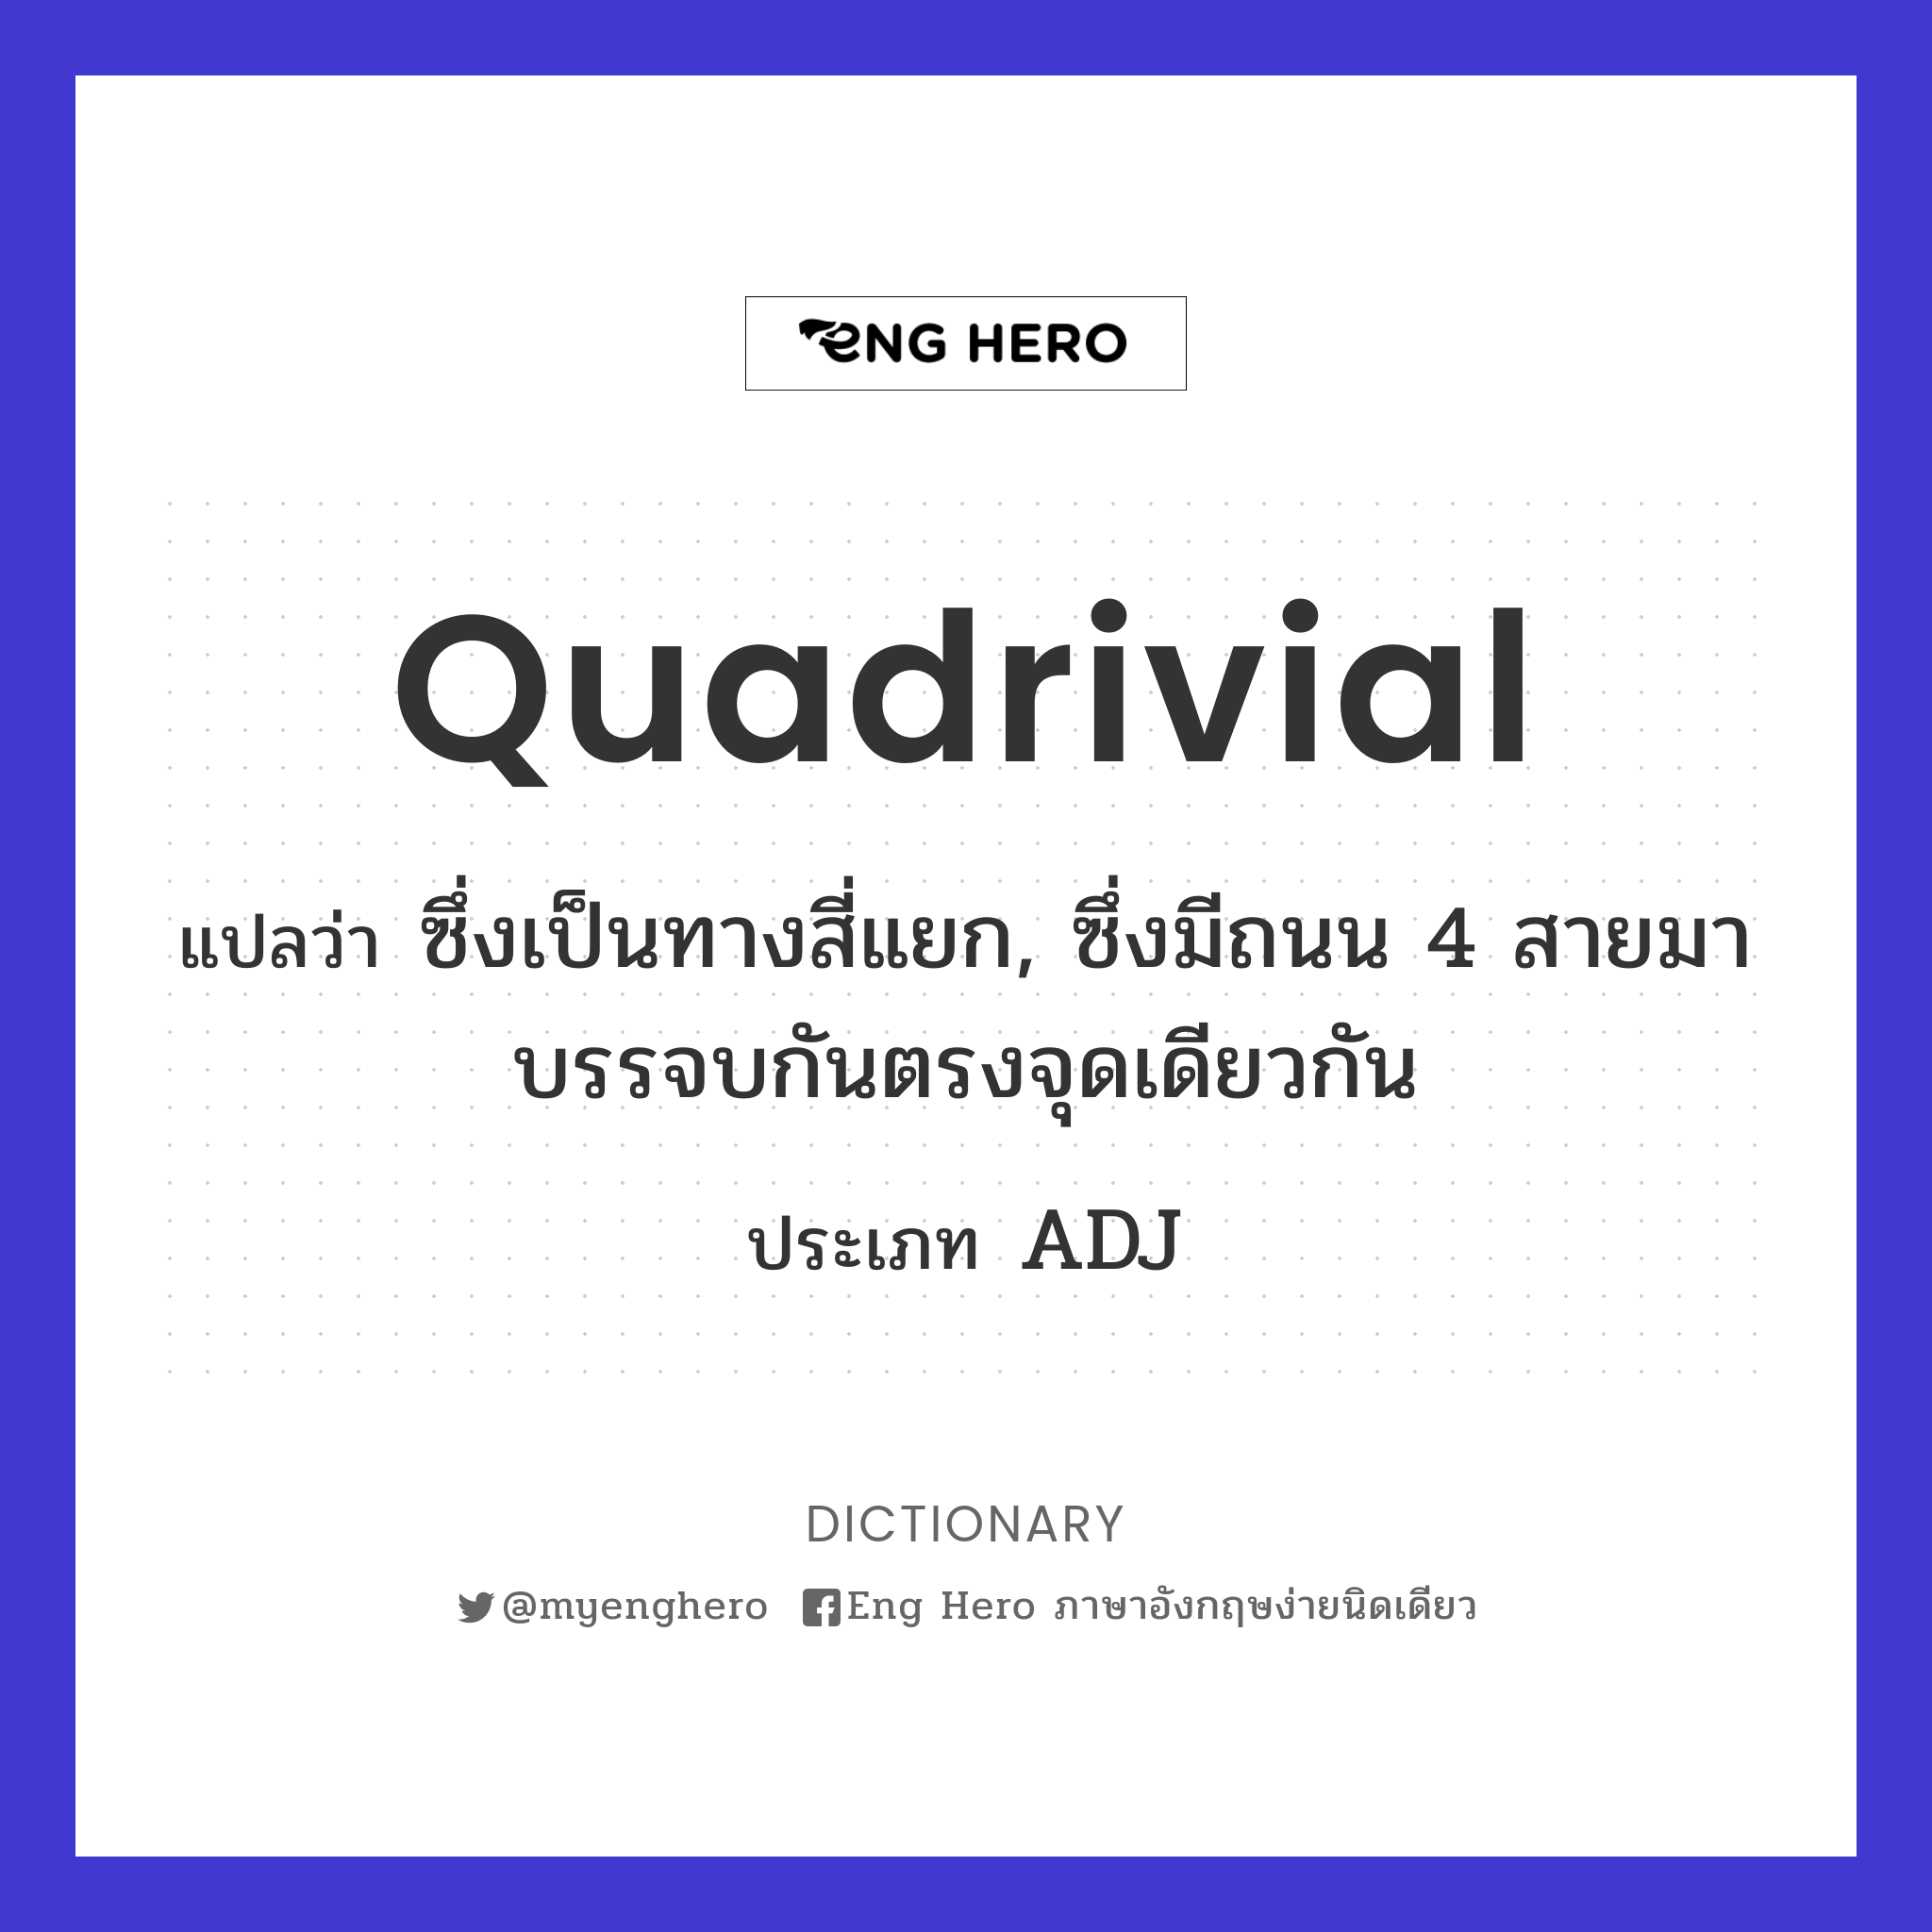 Quadrivial แปลว่า ซึ่งเป็นทางสี่แยก, ซึ่งมีถนน 4  สายมาบรรจบกันตรงจุดเดียวกัน | Eng Hero เรียนภาษาอังกฤษ ออนไลน์ ฟรี